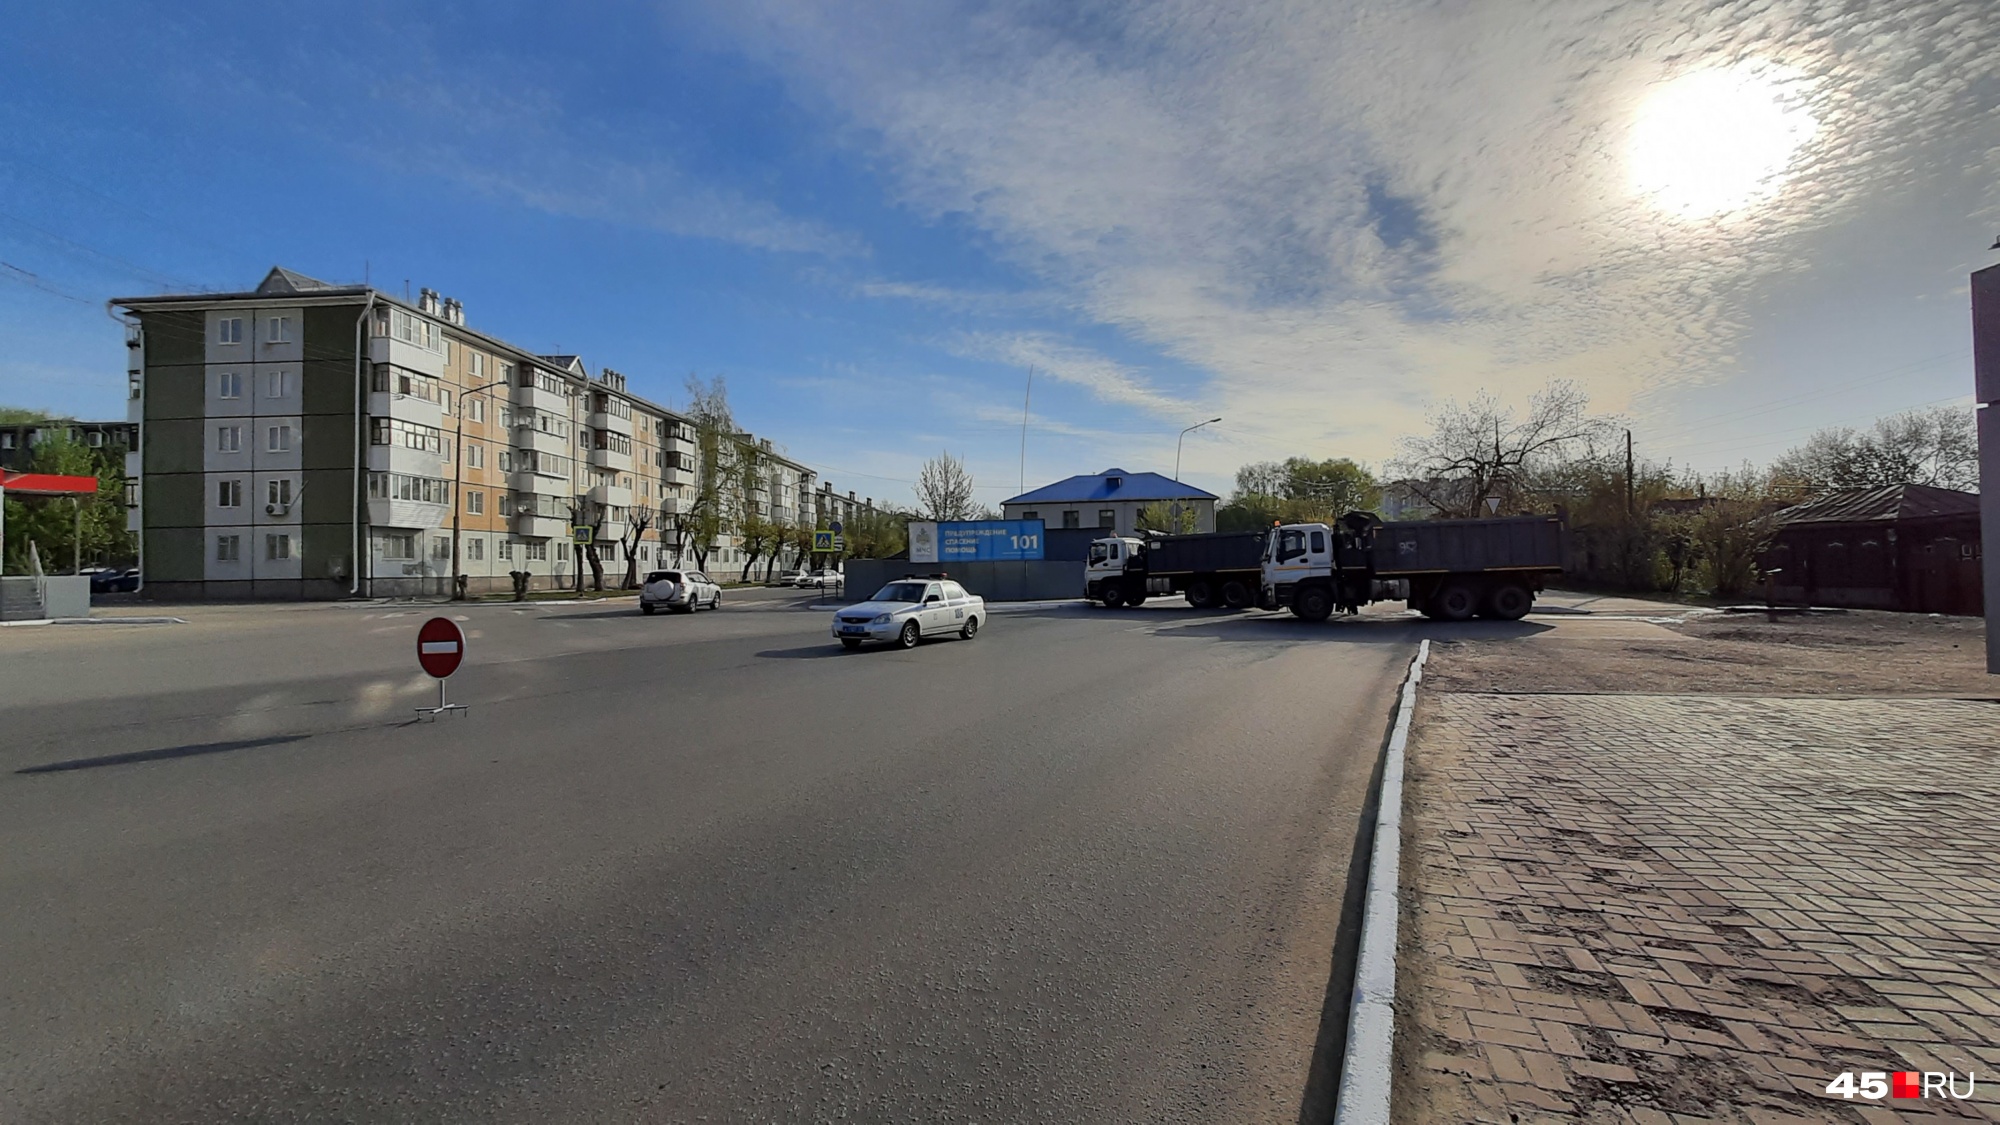 Улица Карельцева закрыта, объезд по Пушкина